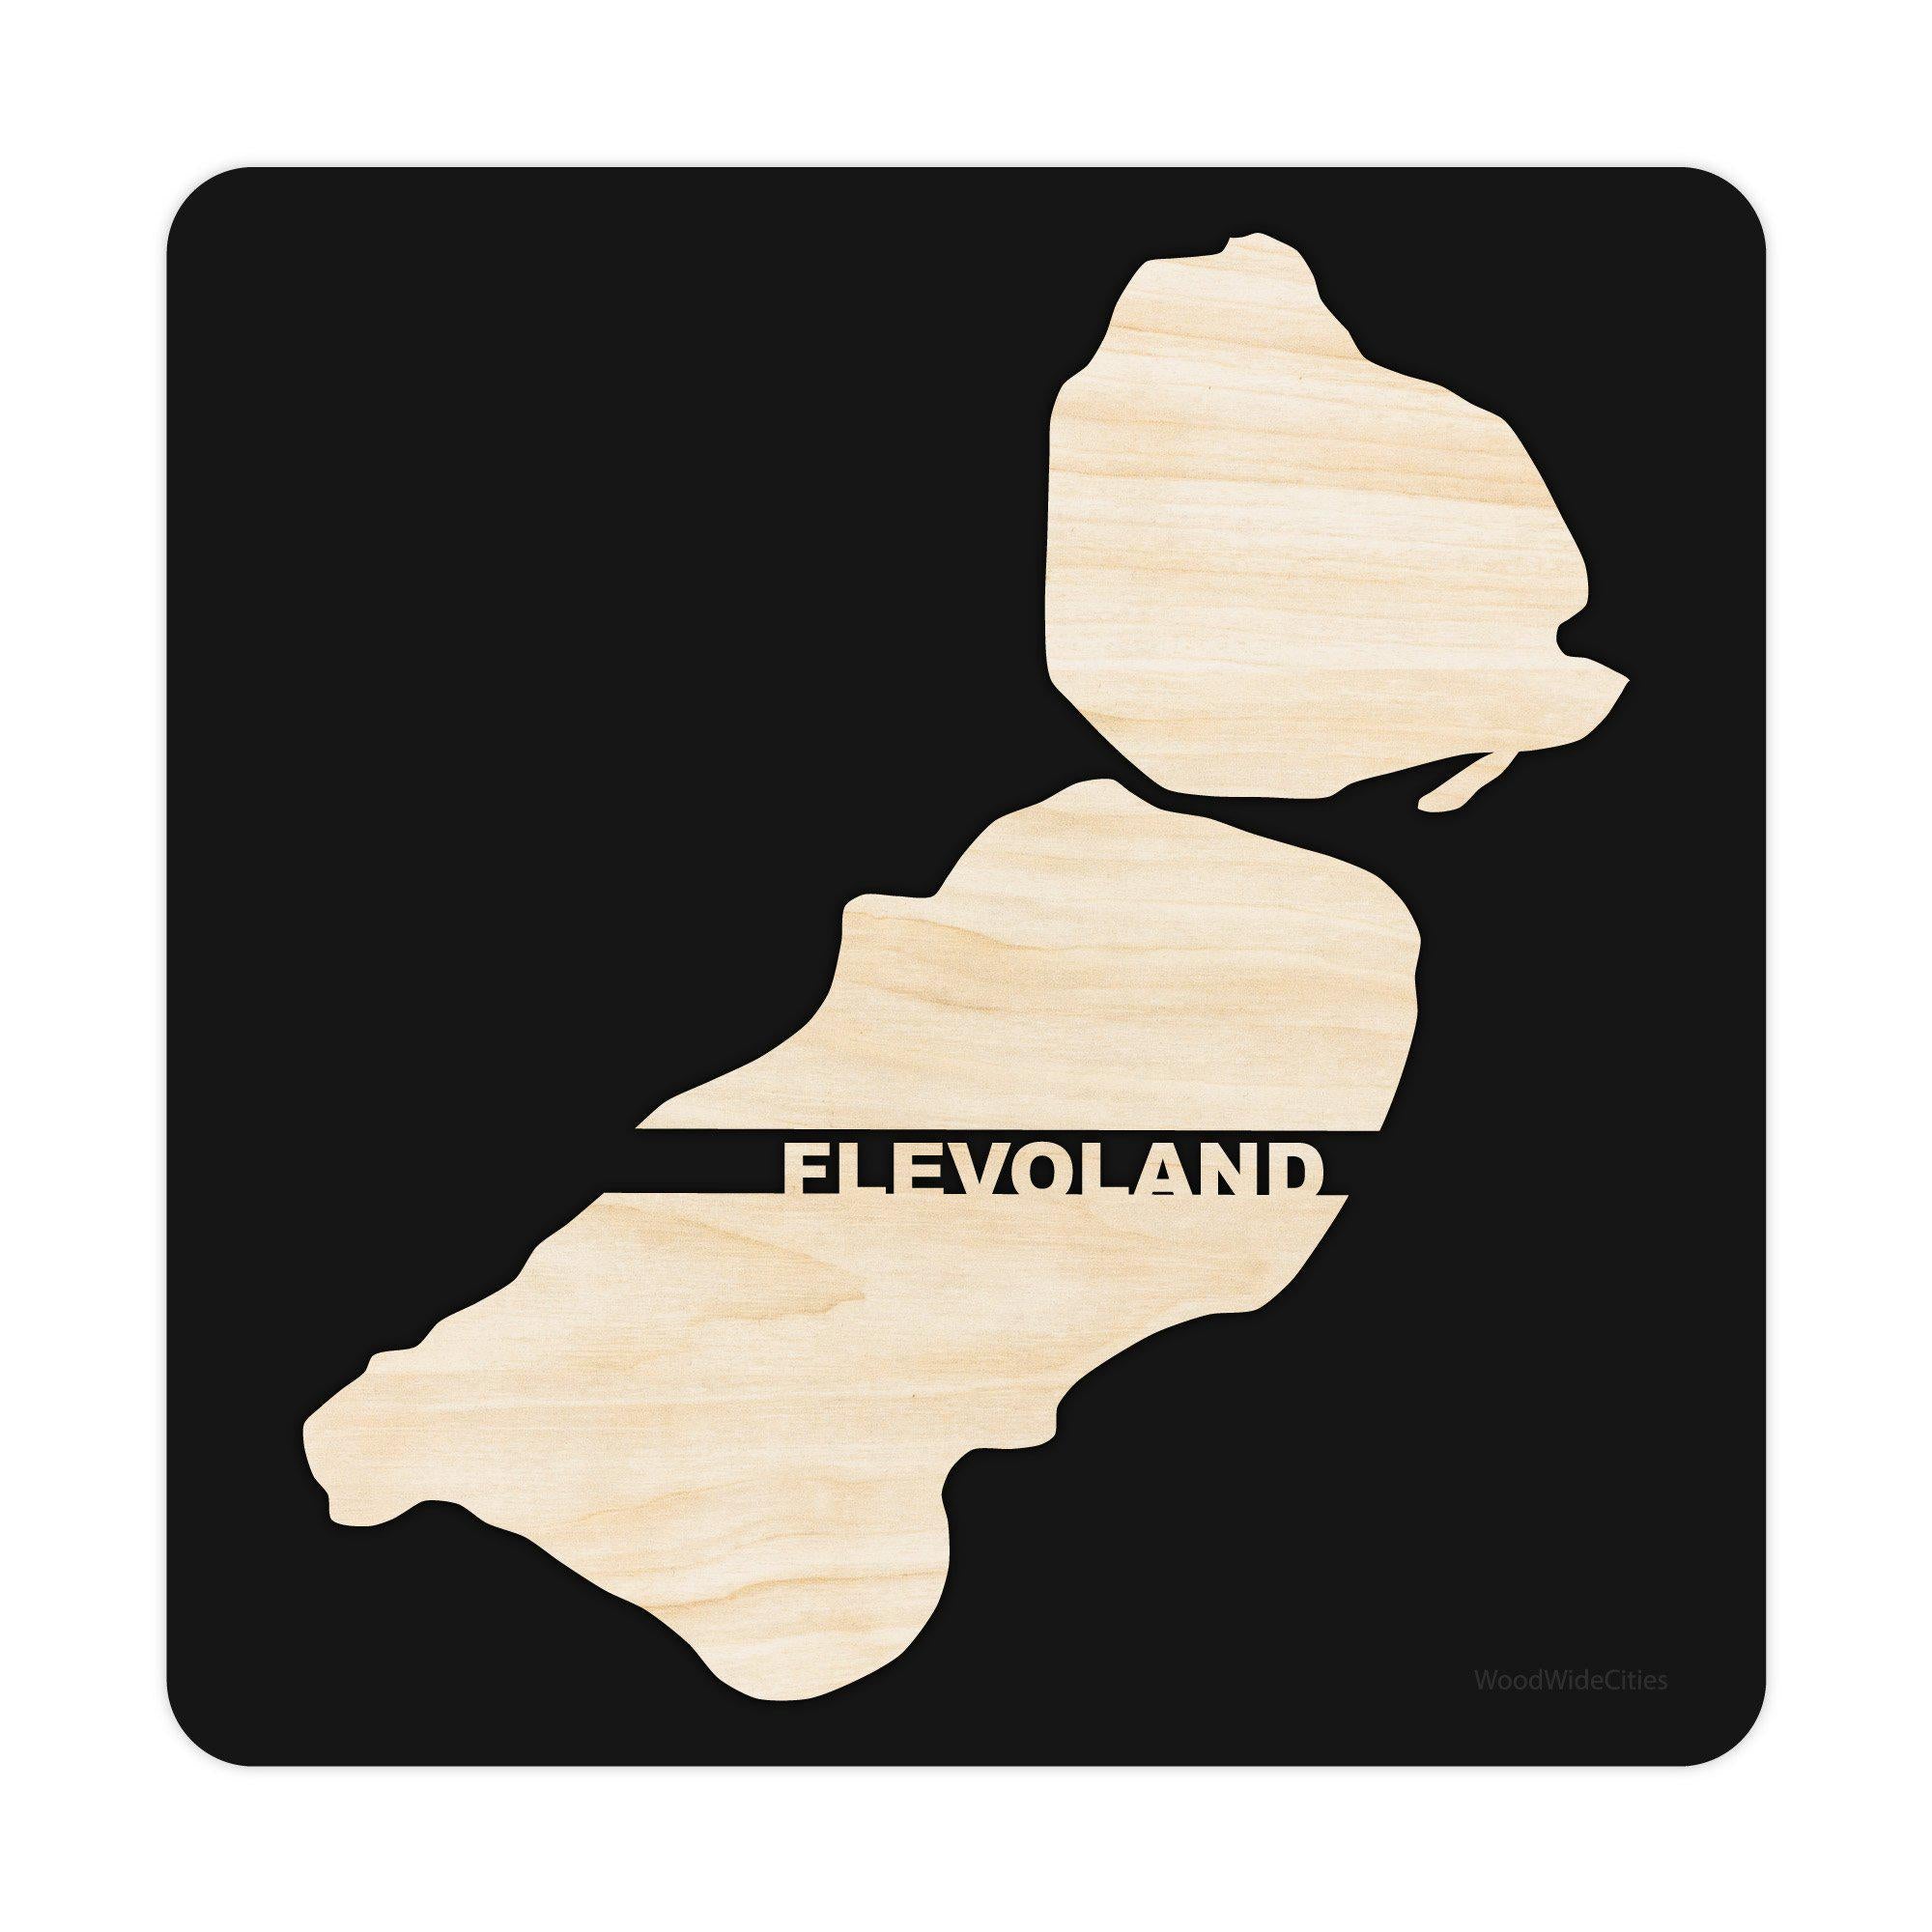 Provincie Flevoland Black S (25x25 cm) houten cadeau decoratie relatiegeschenk van WoodWideCities